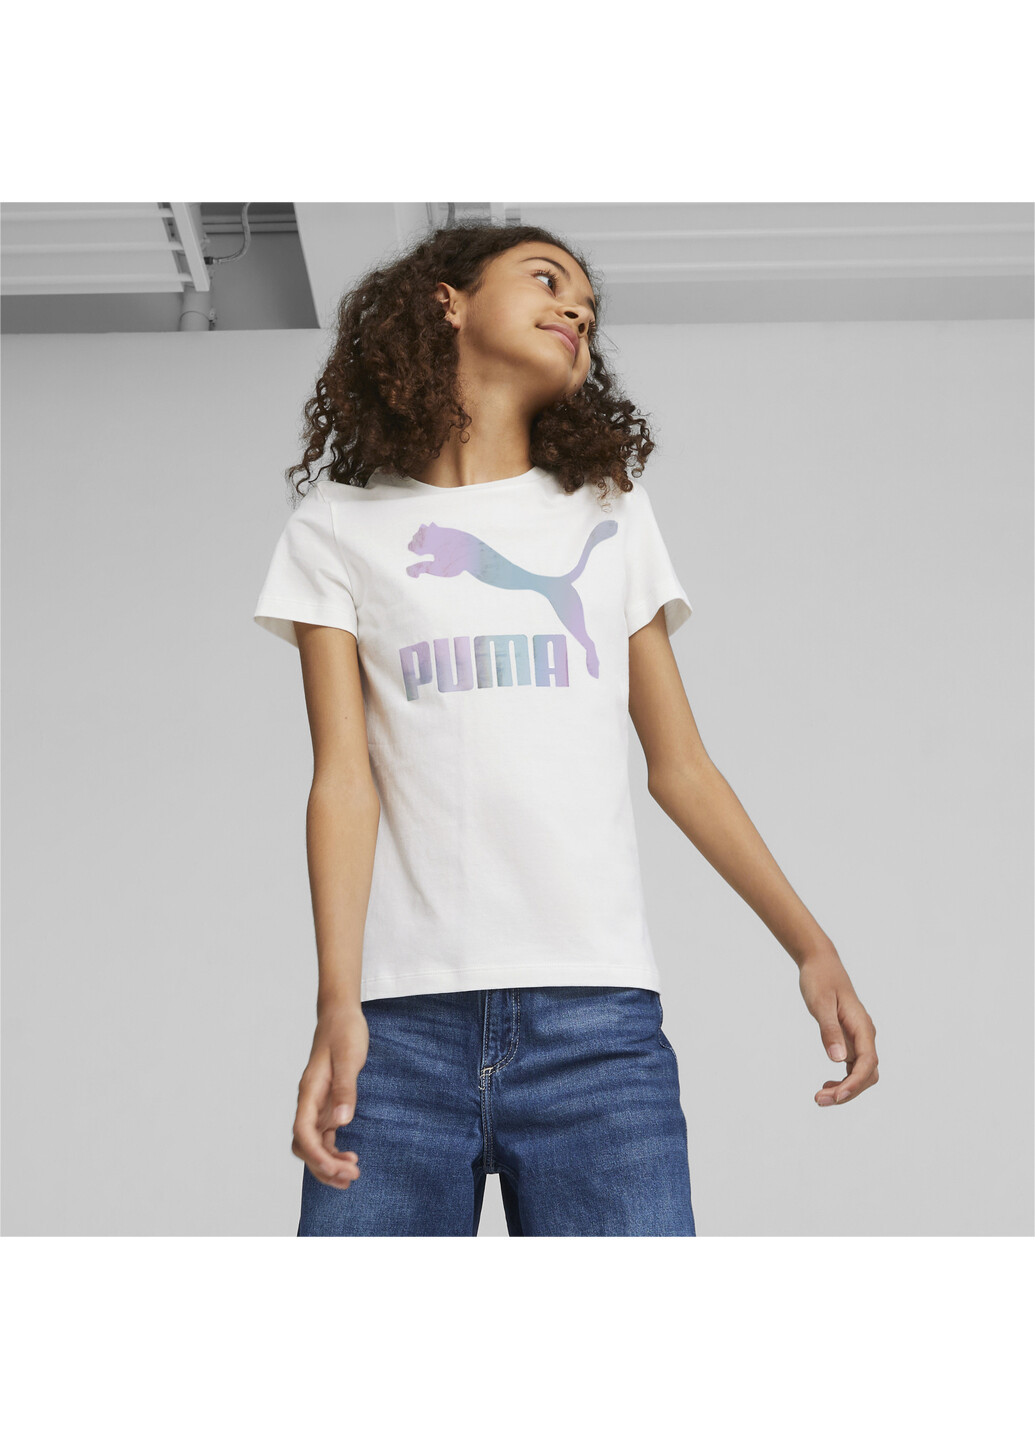 Белая демисезонная детская футболка classics iridescent logo youth tee Puma